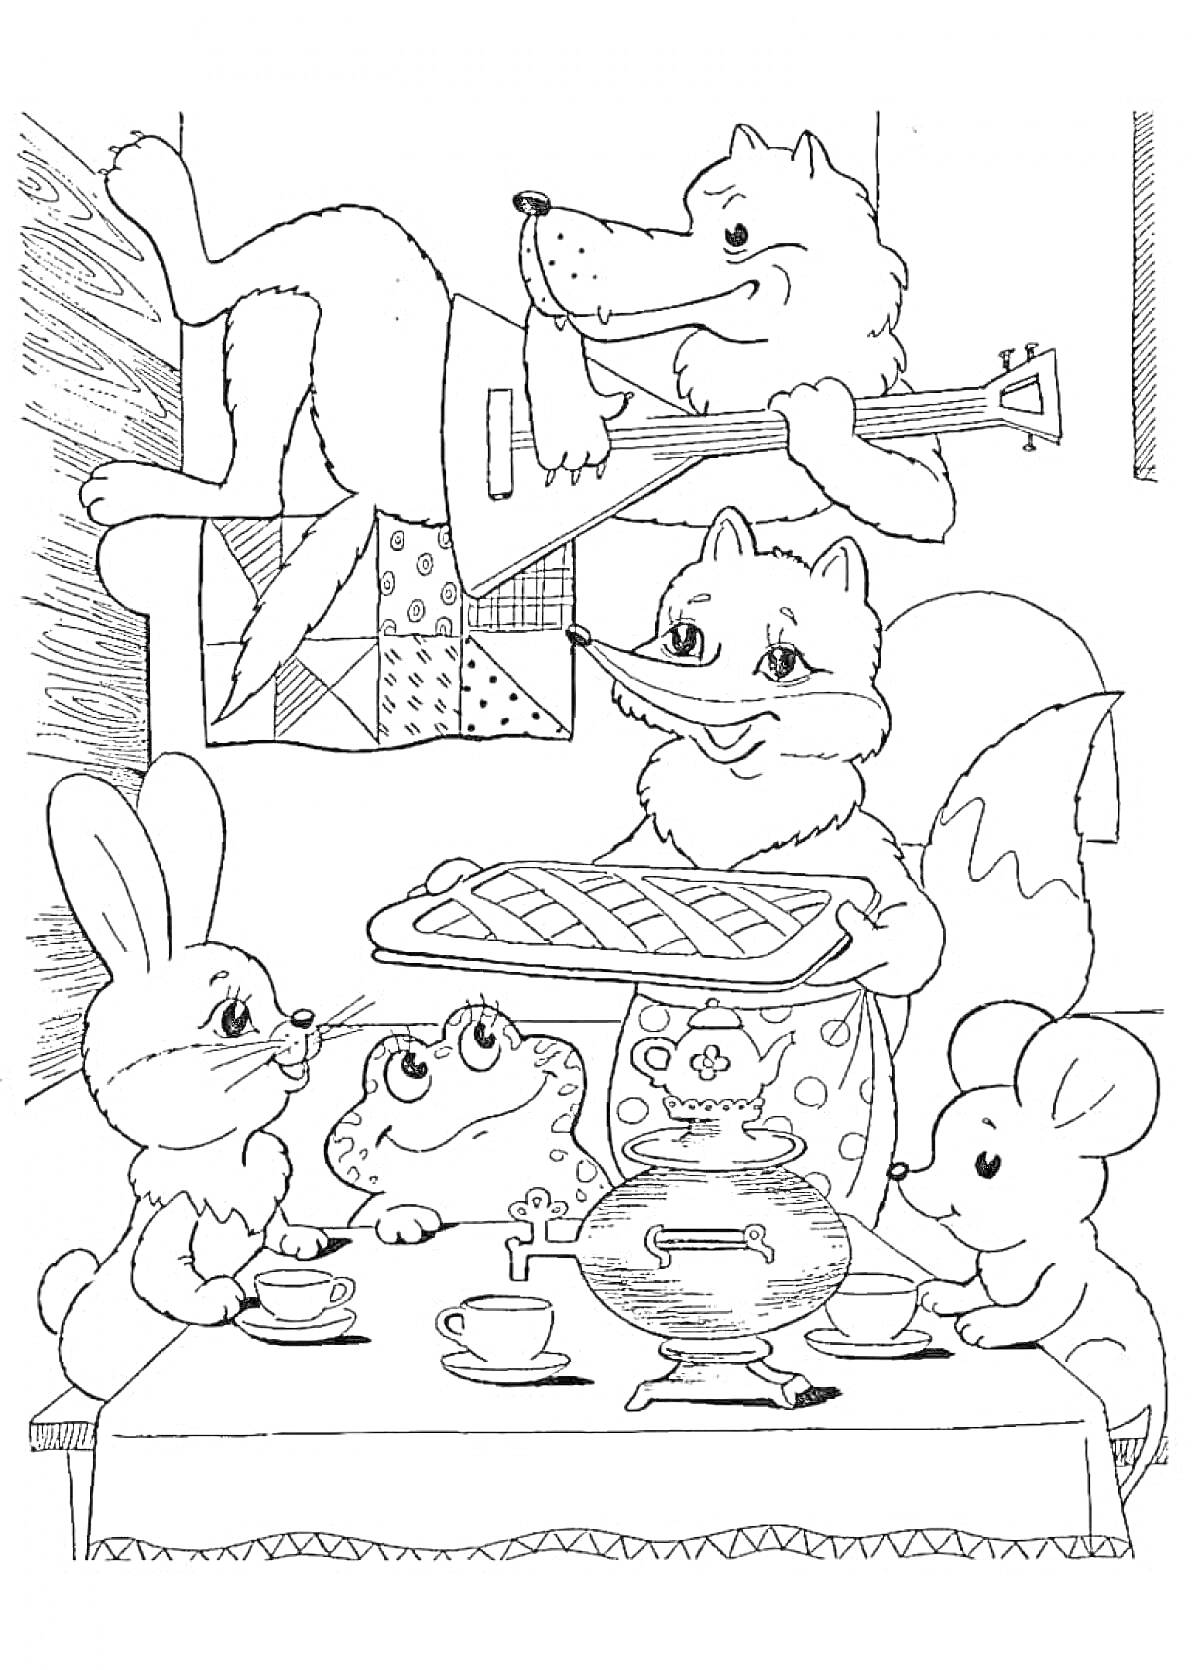 В теремке: лиса с пирогом, волк с балалайкой, заяц, лягушка, мышь сидят за накрытым столом